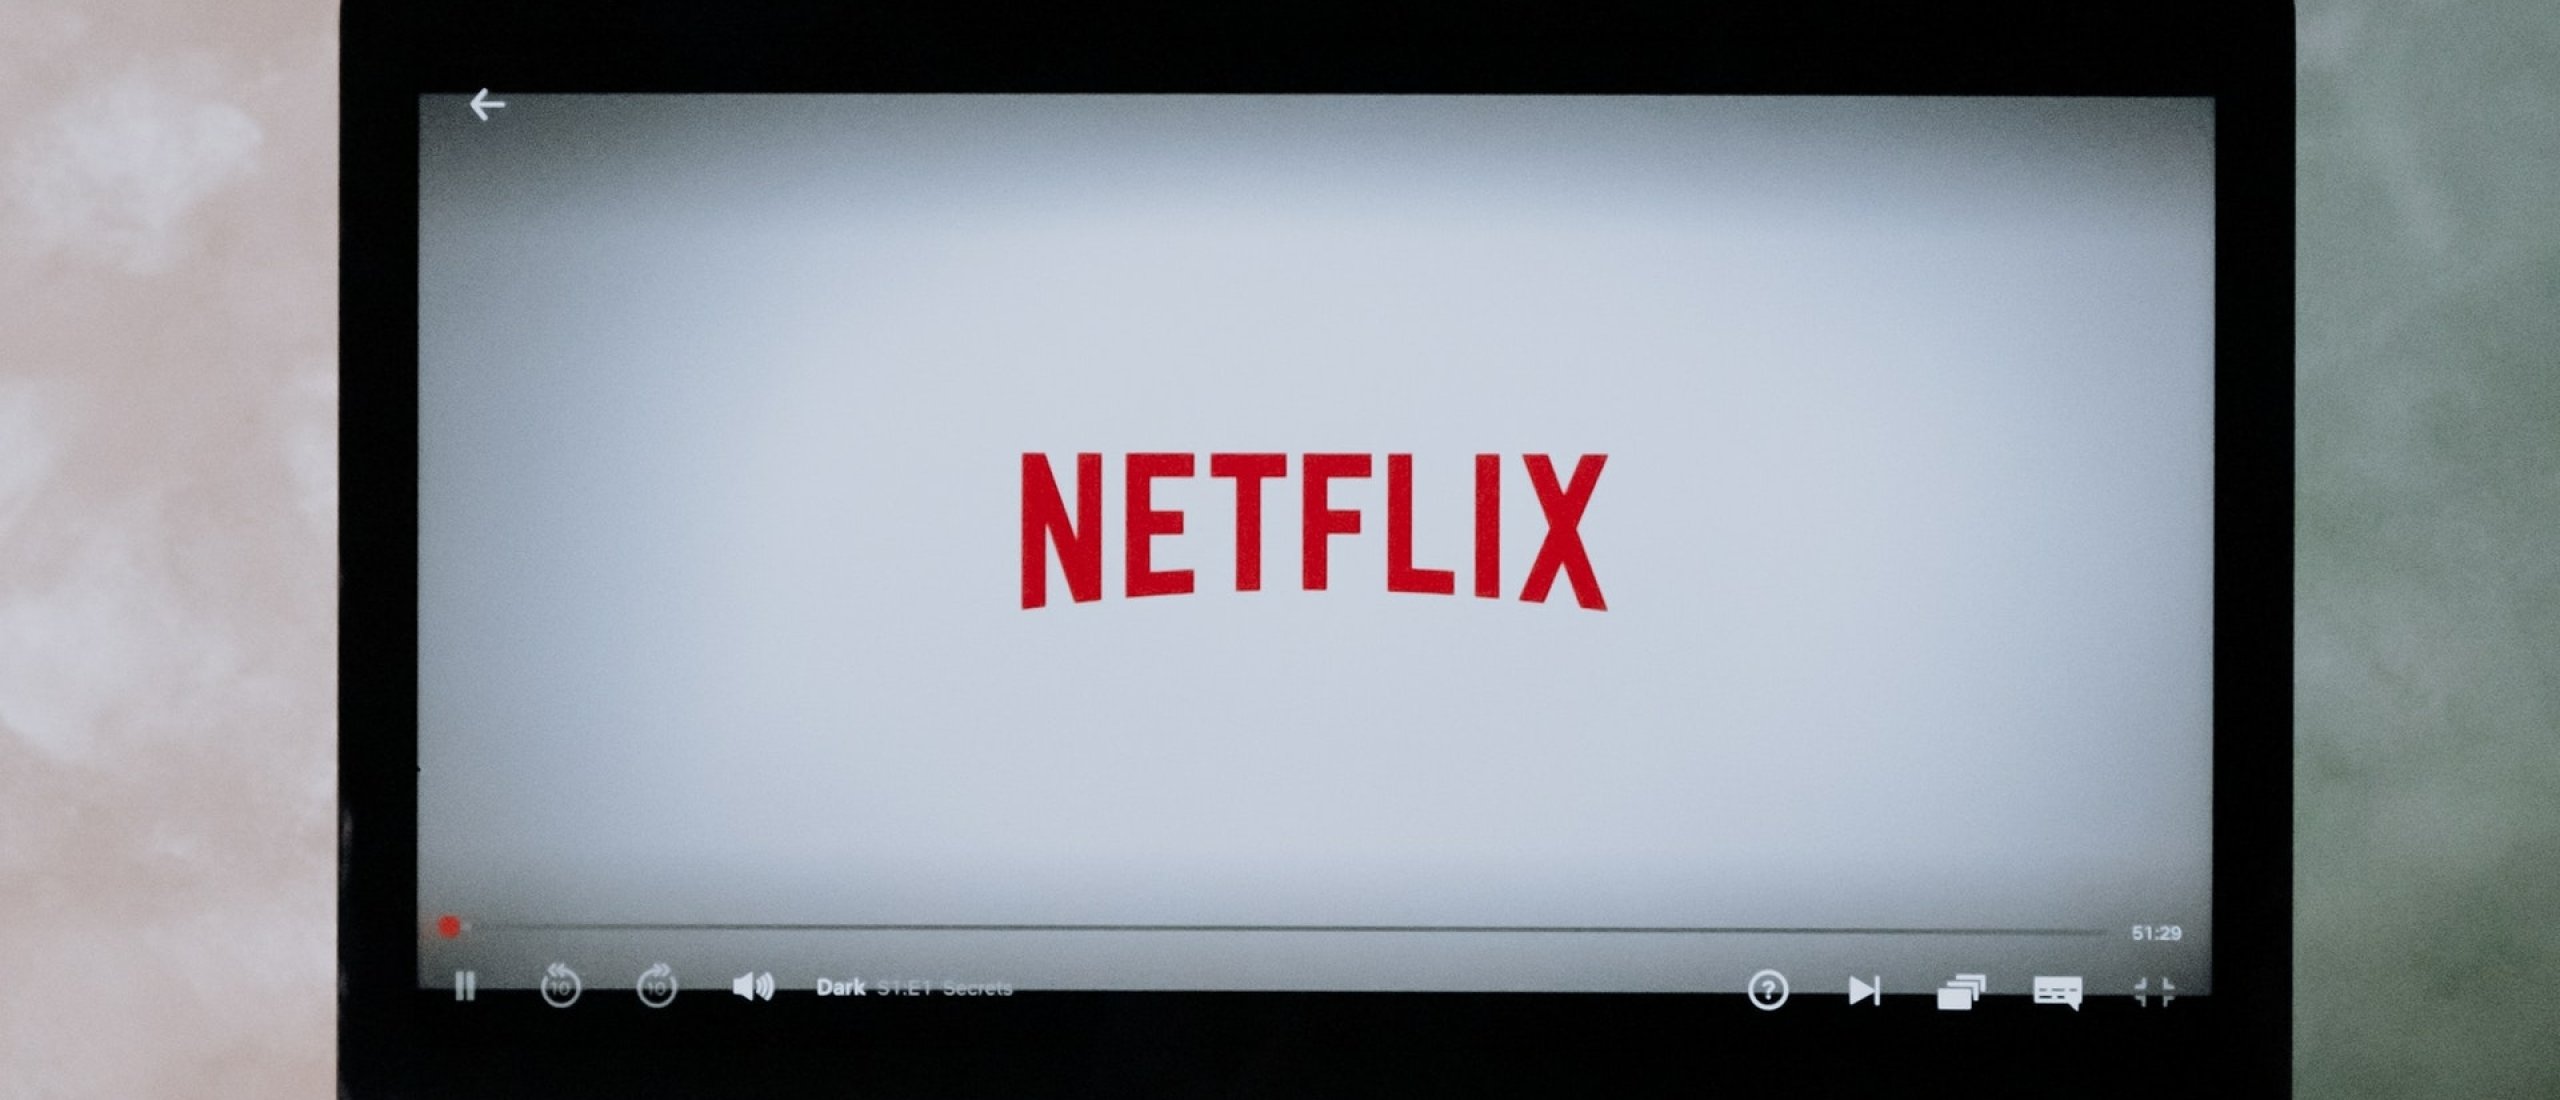 Trendgevoelige producten: Netflix serie wordt een hit, Amazon verkopers profiteren!